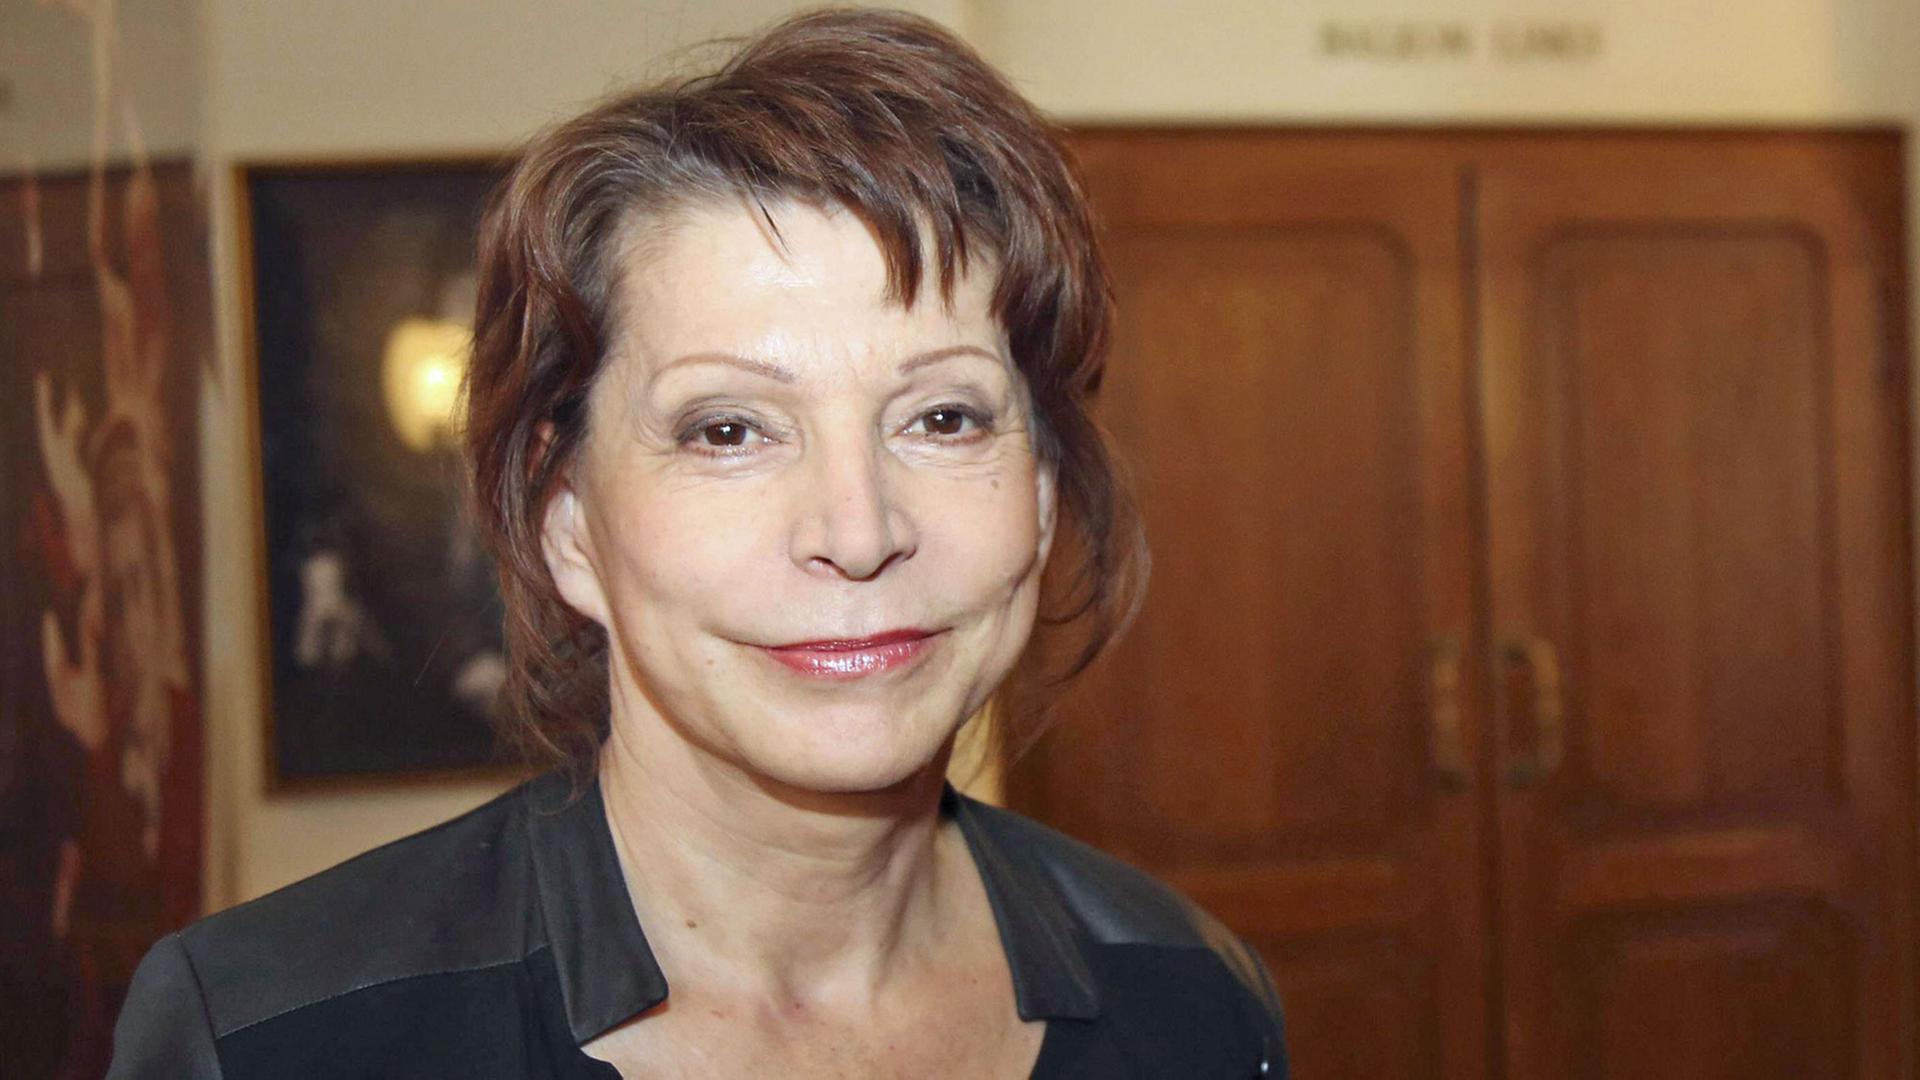 Anna Badora bei der Pressekonferenz zum Volkstheater Wien Spielprogramm 2015/16 in der Roten Bar im Volkstheater, aufgenommen am 07.05.2015.